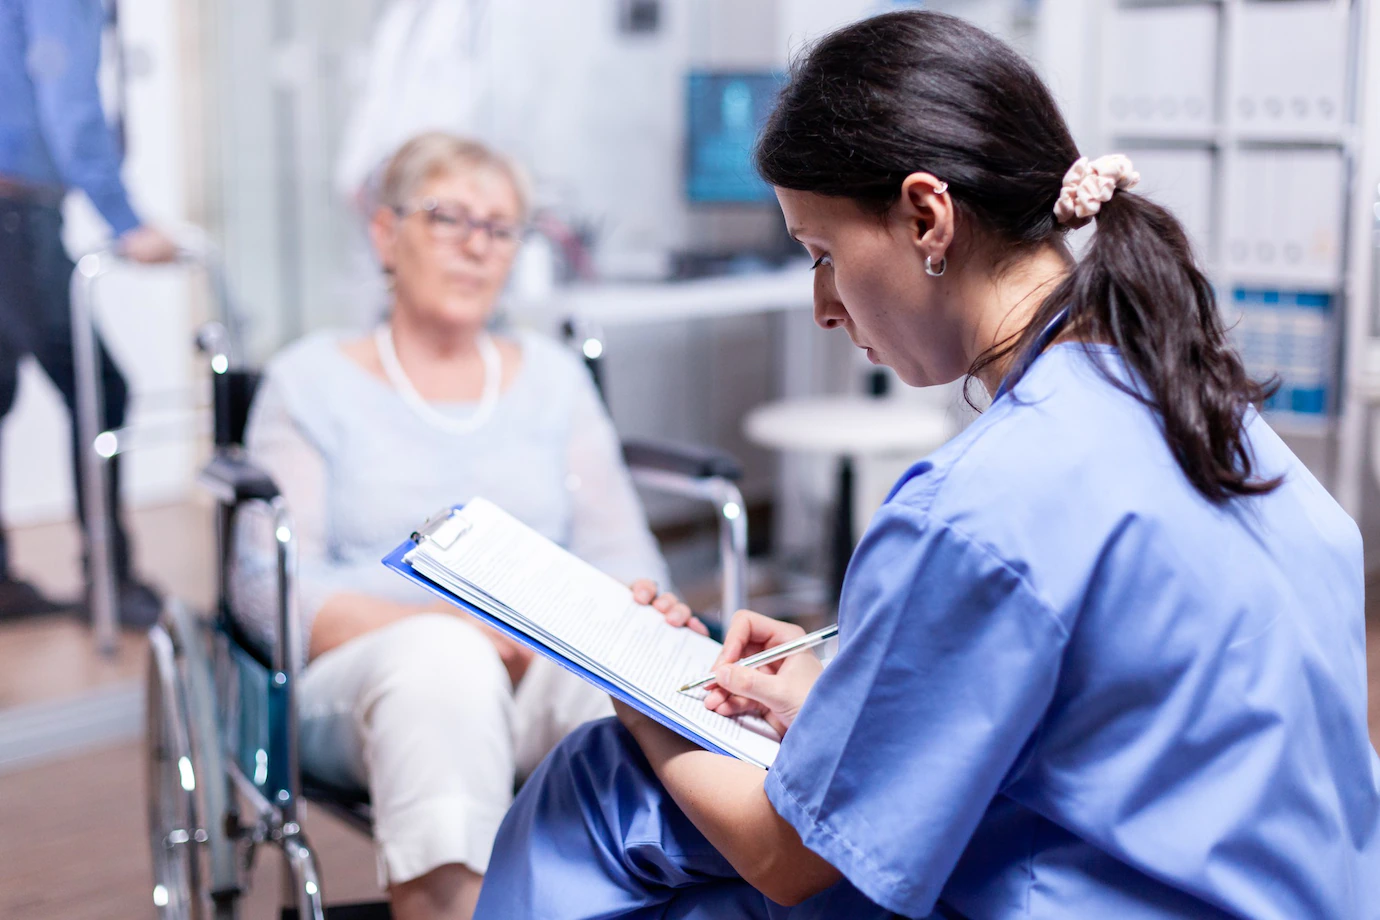 infirmiere-ecrivant-ordonnance-pour-femme-agee-handicapee-fauteuil-roulant-apres-examen-medical_482257-8485